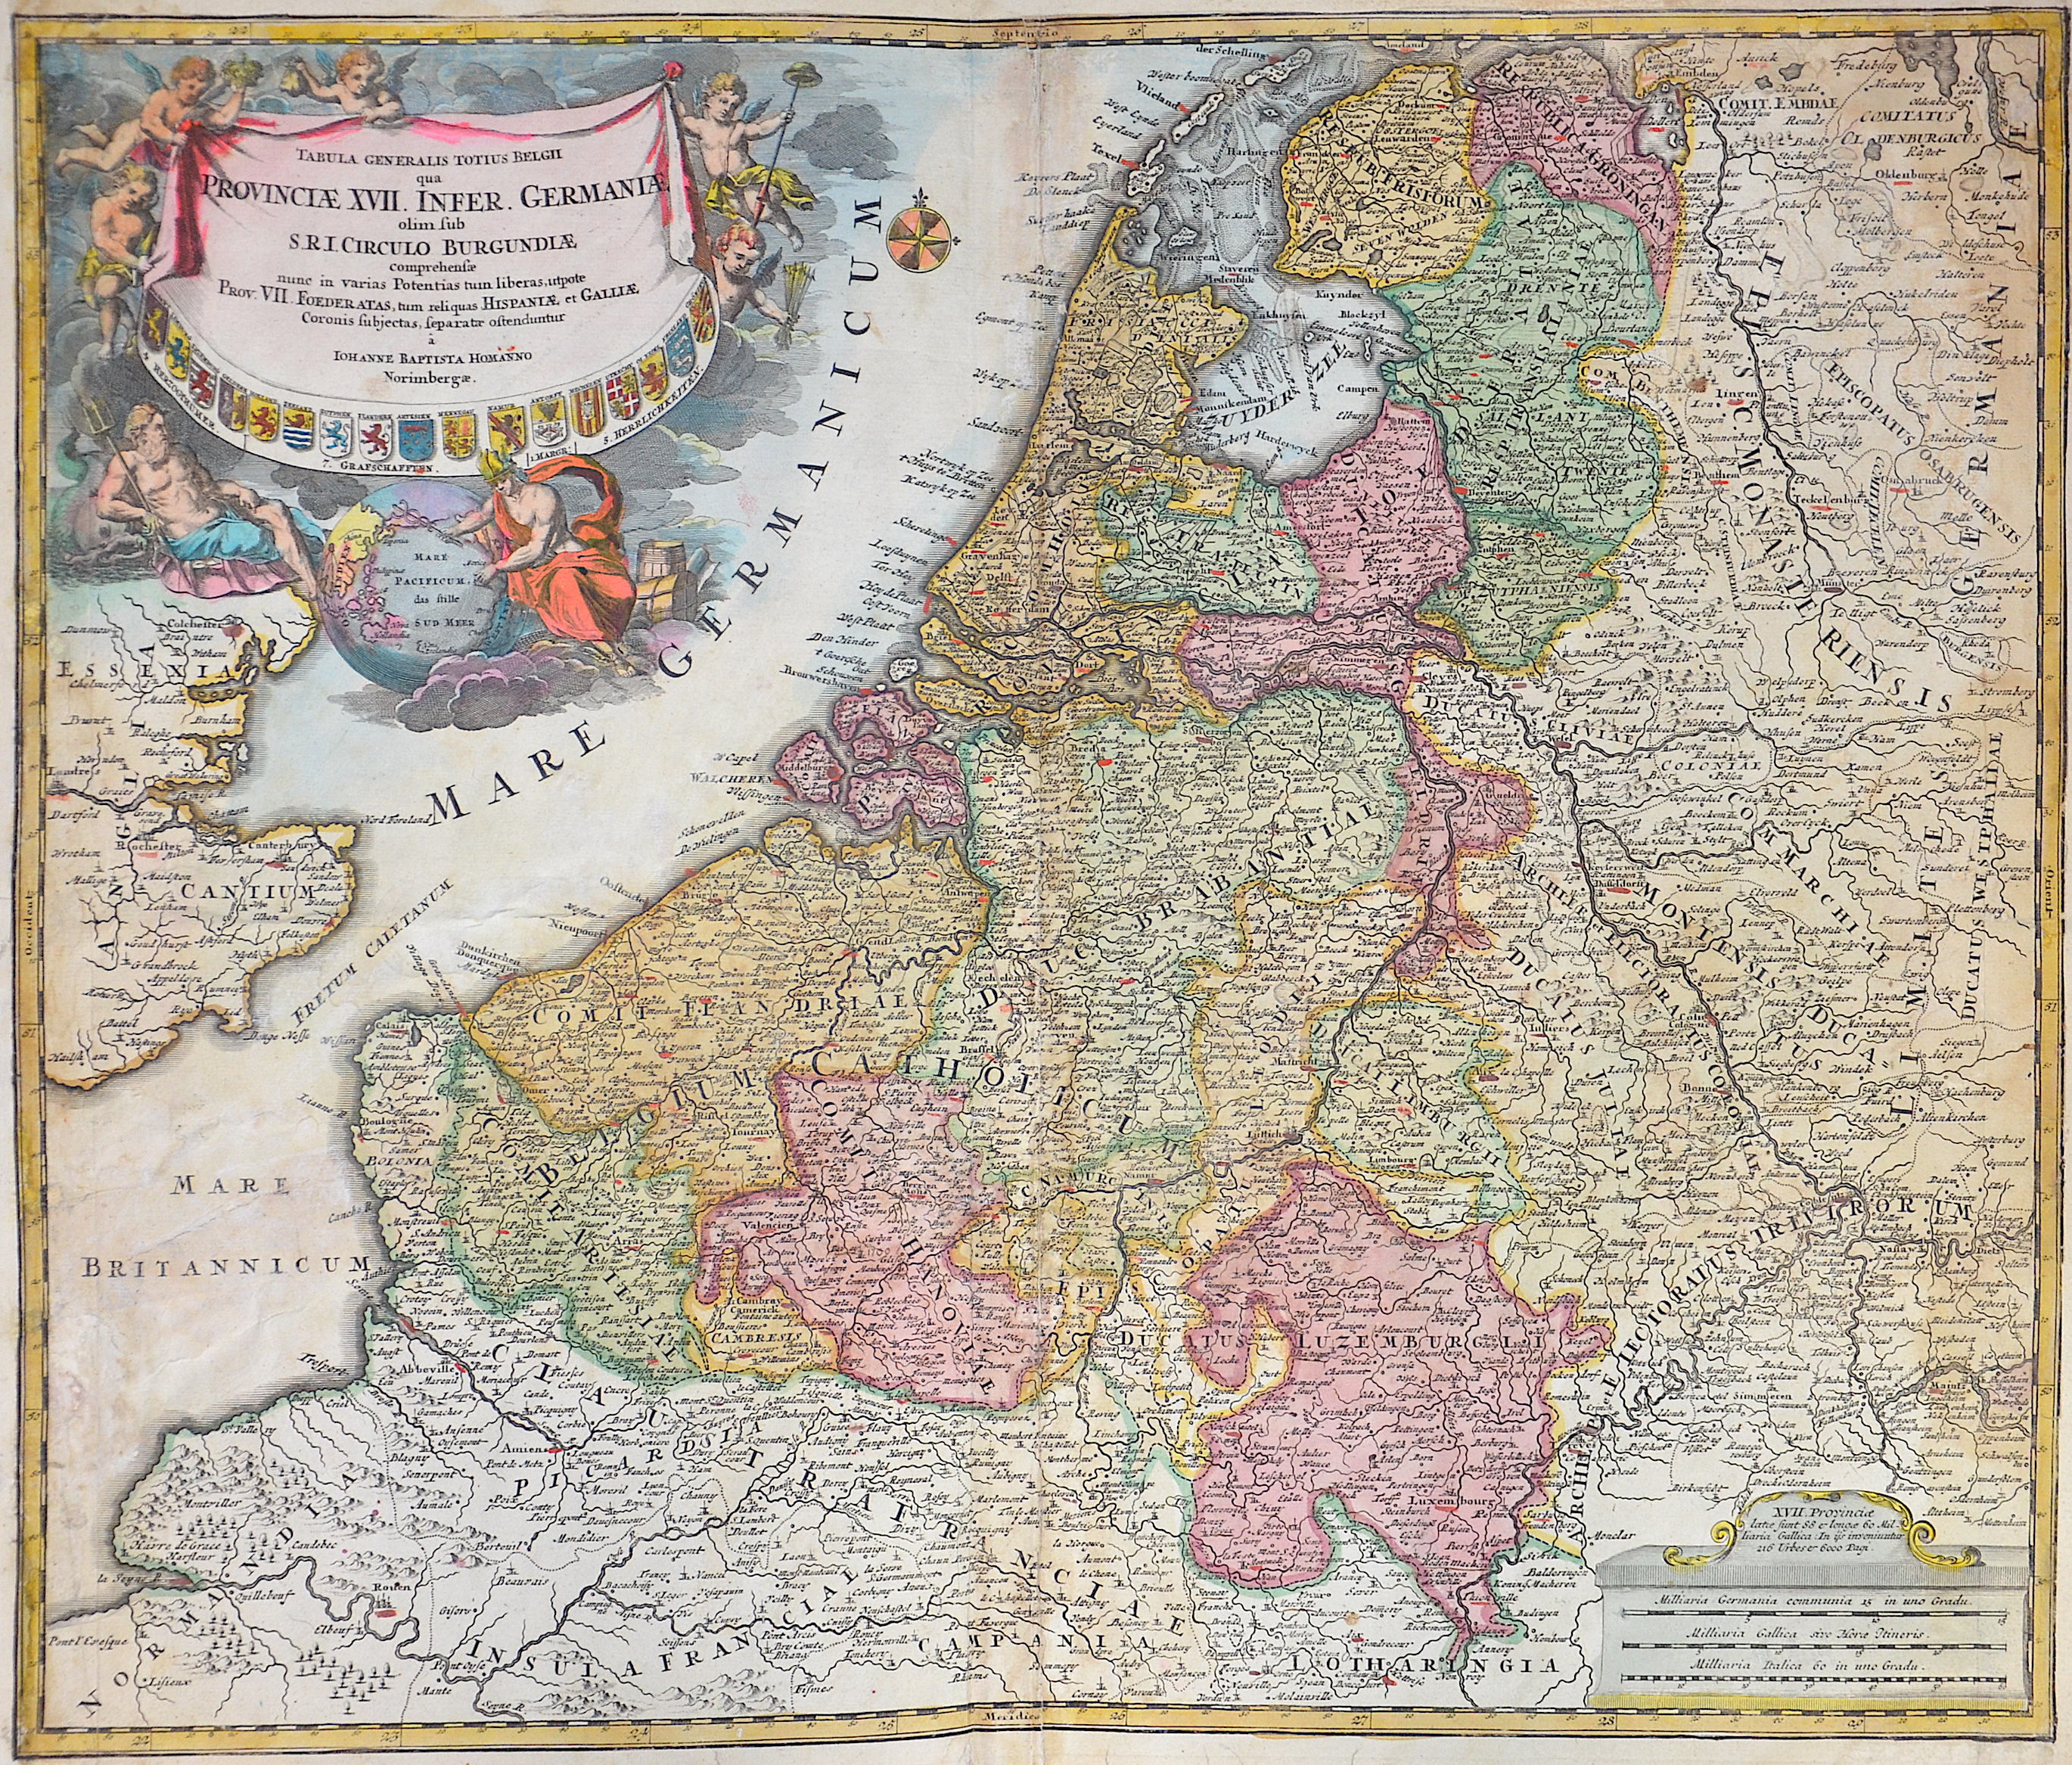 Homann  Tabula Generalis Totius Belgii qua Provinciae XVII. infer. Germaniae olim sub S.R.I. Circulo Burgundiae